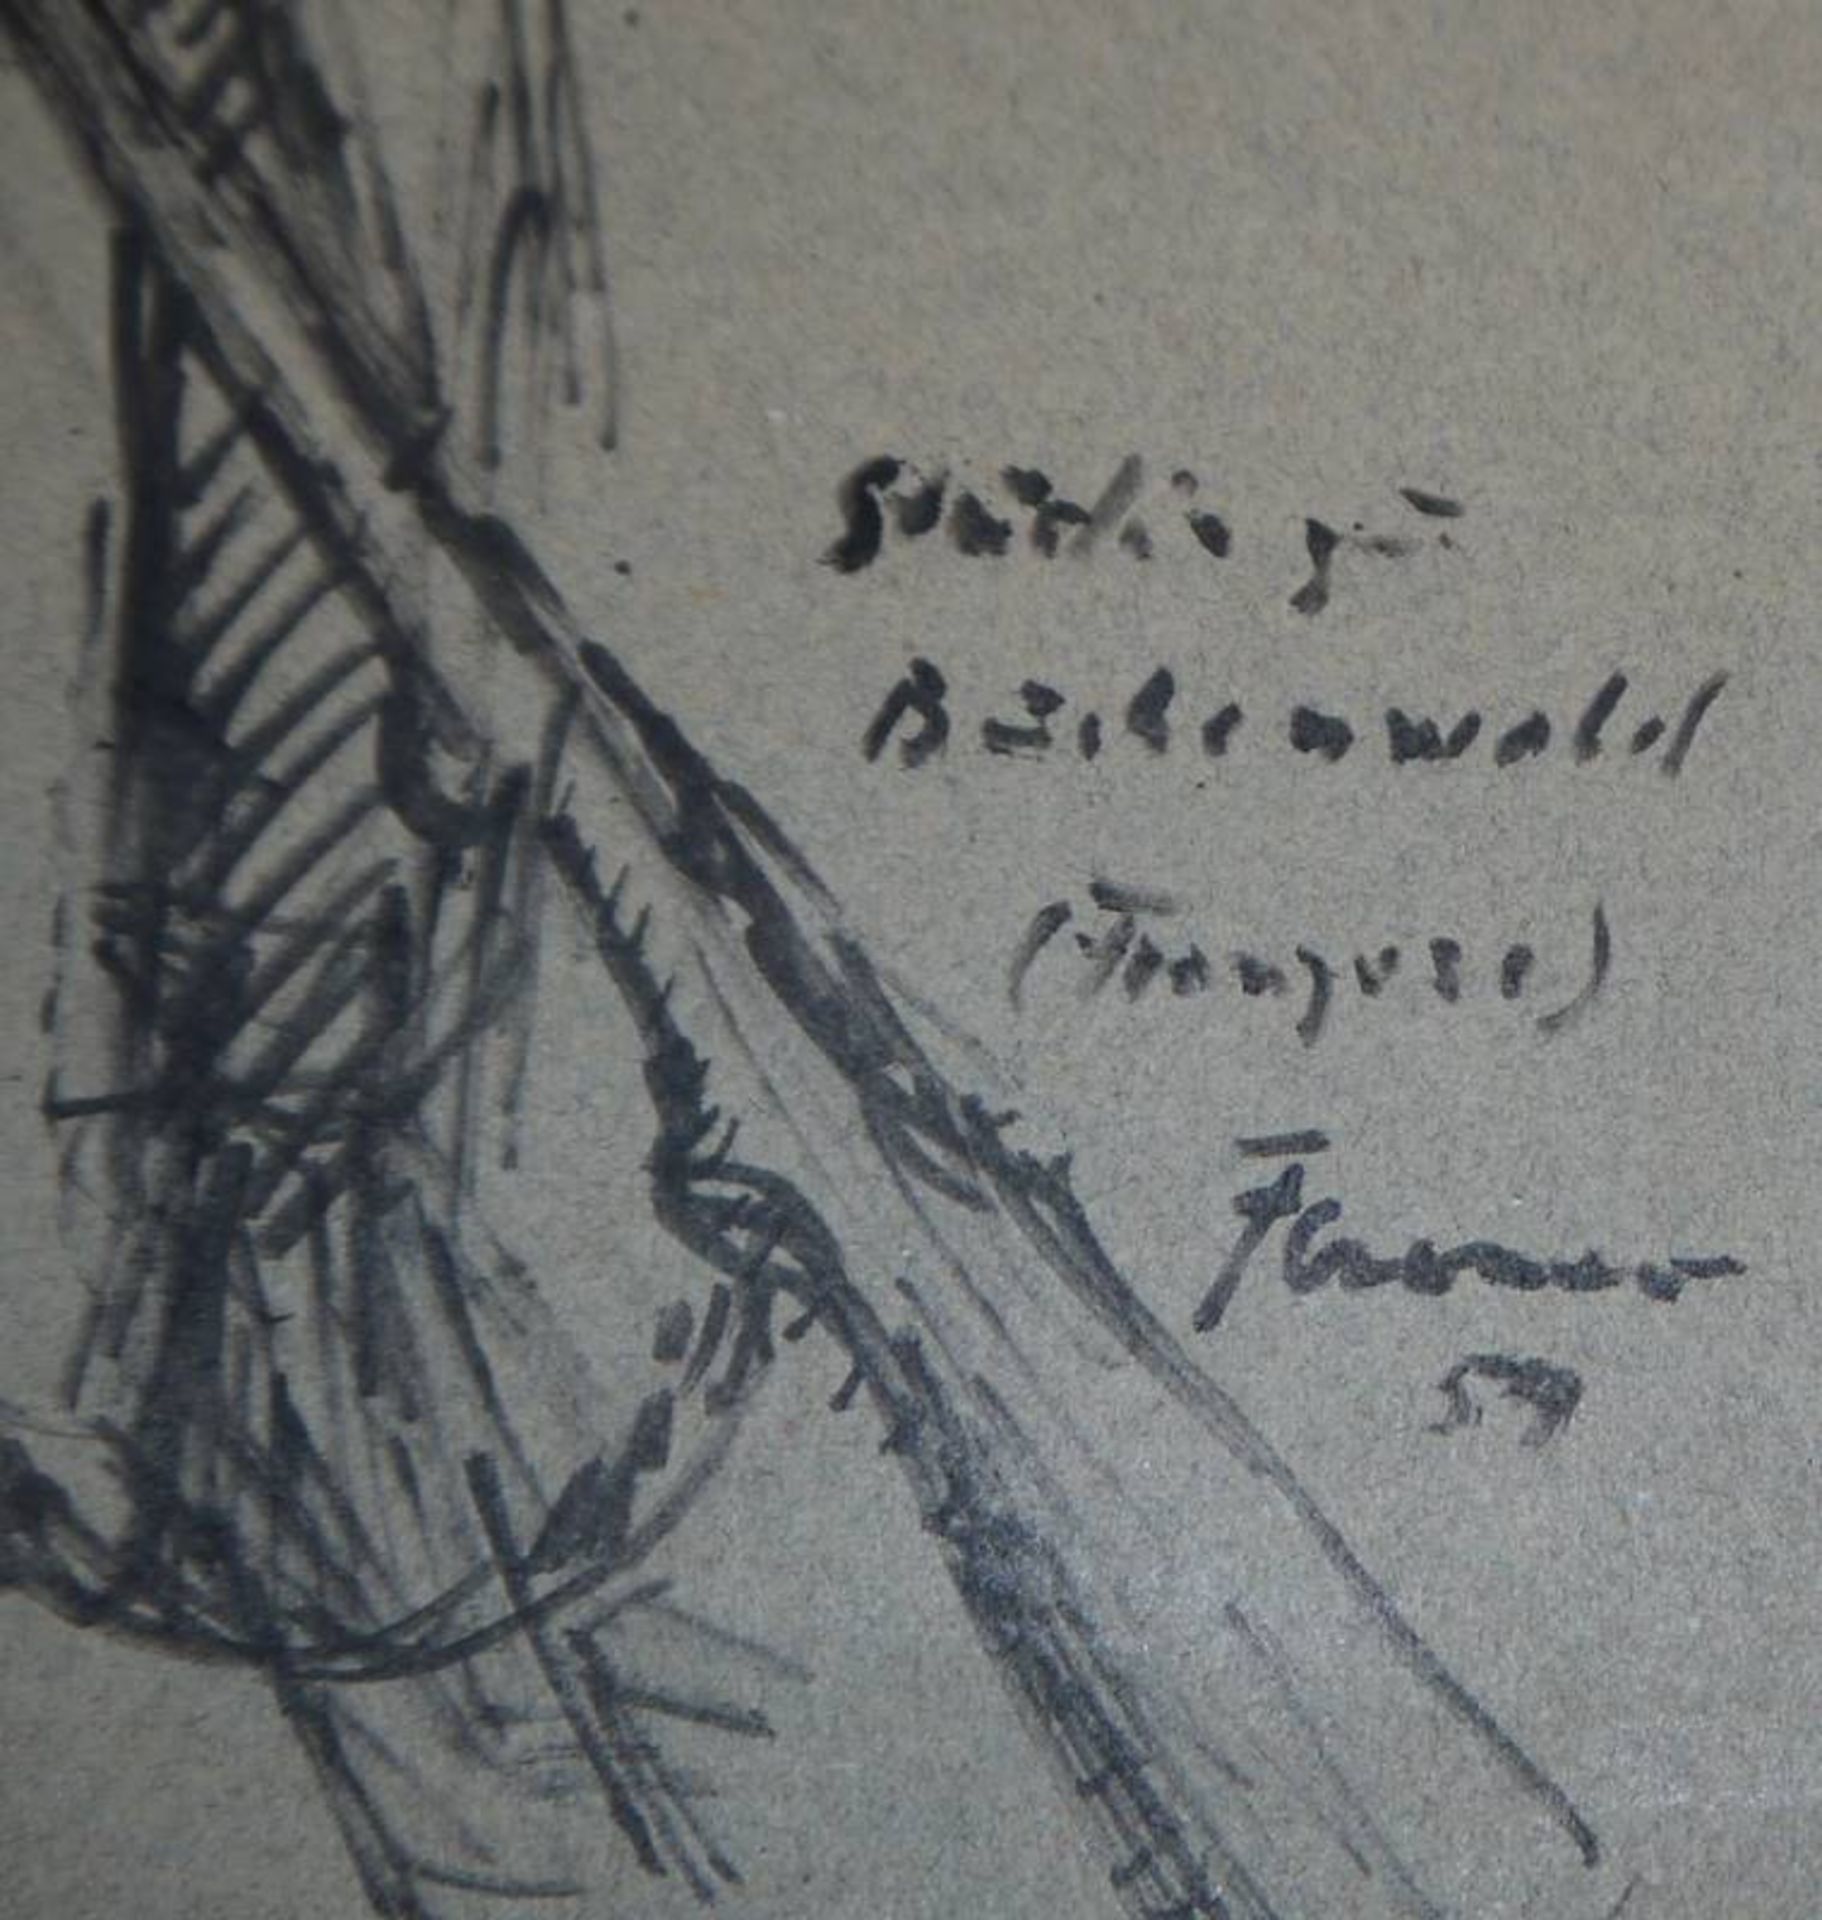 Fritz Cremer, "Franzose", signierte Federzeichnung von 1954 - Image 2 of 2